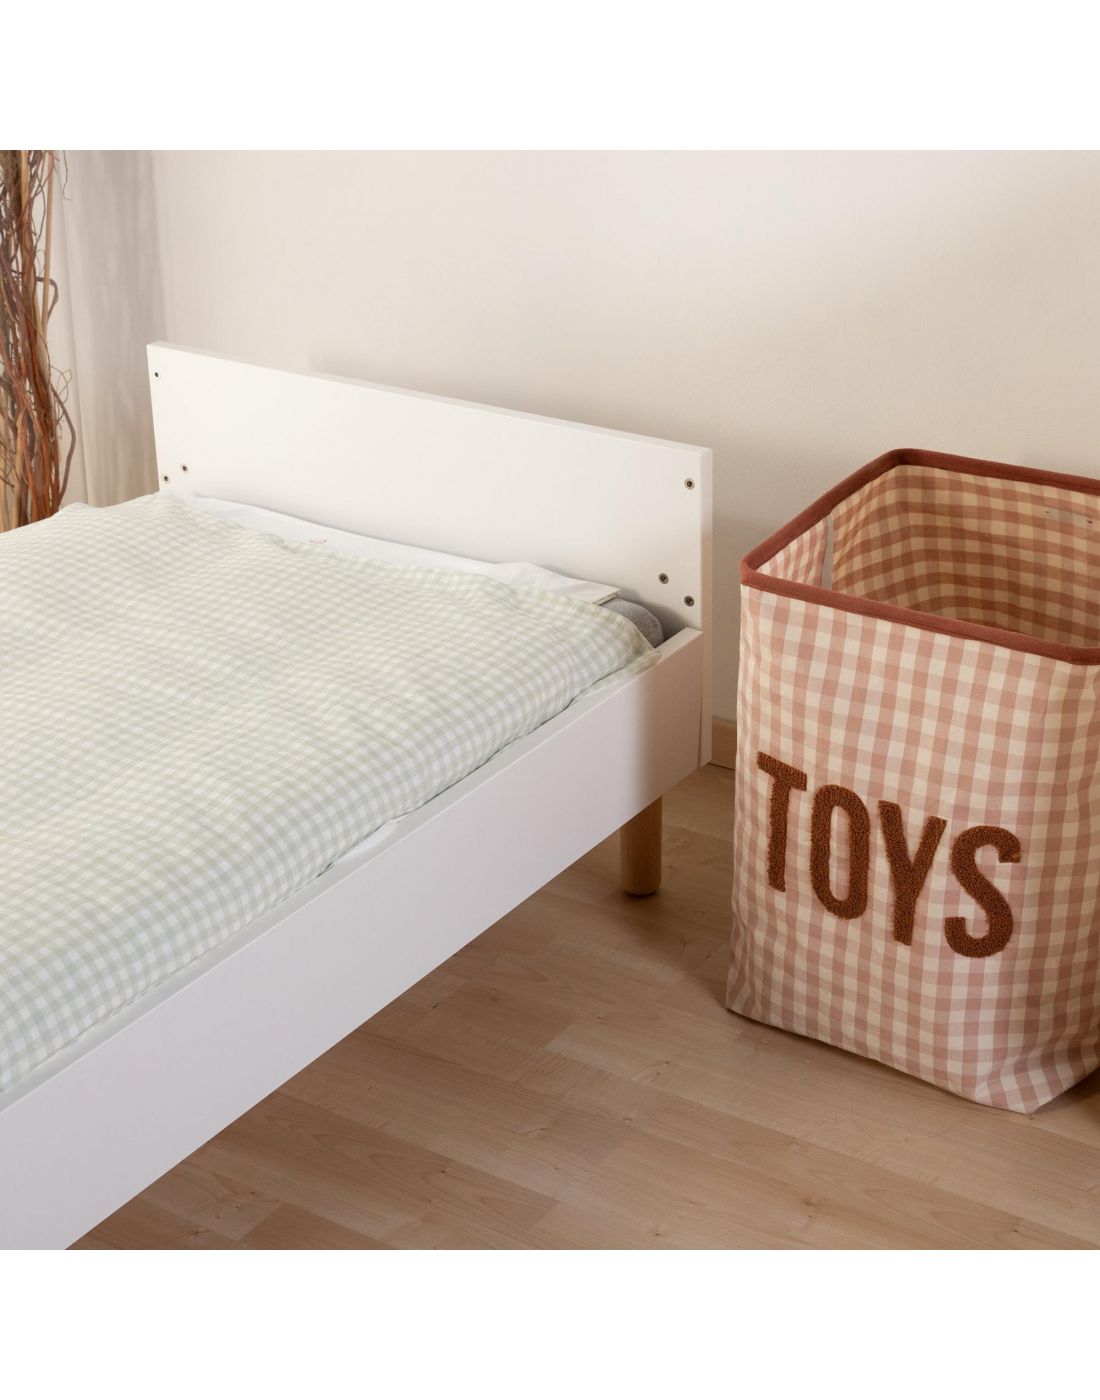 Παιδικό Κρεβάτι Wonder White 70x140cm Childhome, Childhome, BR77570 |  LapinKids.com | LAPIN KIDS